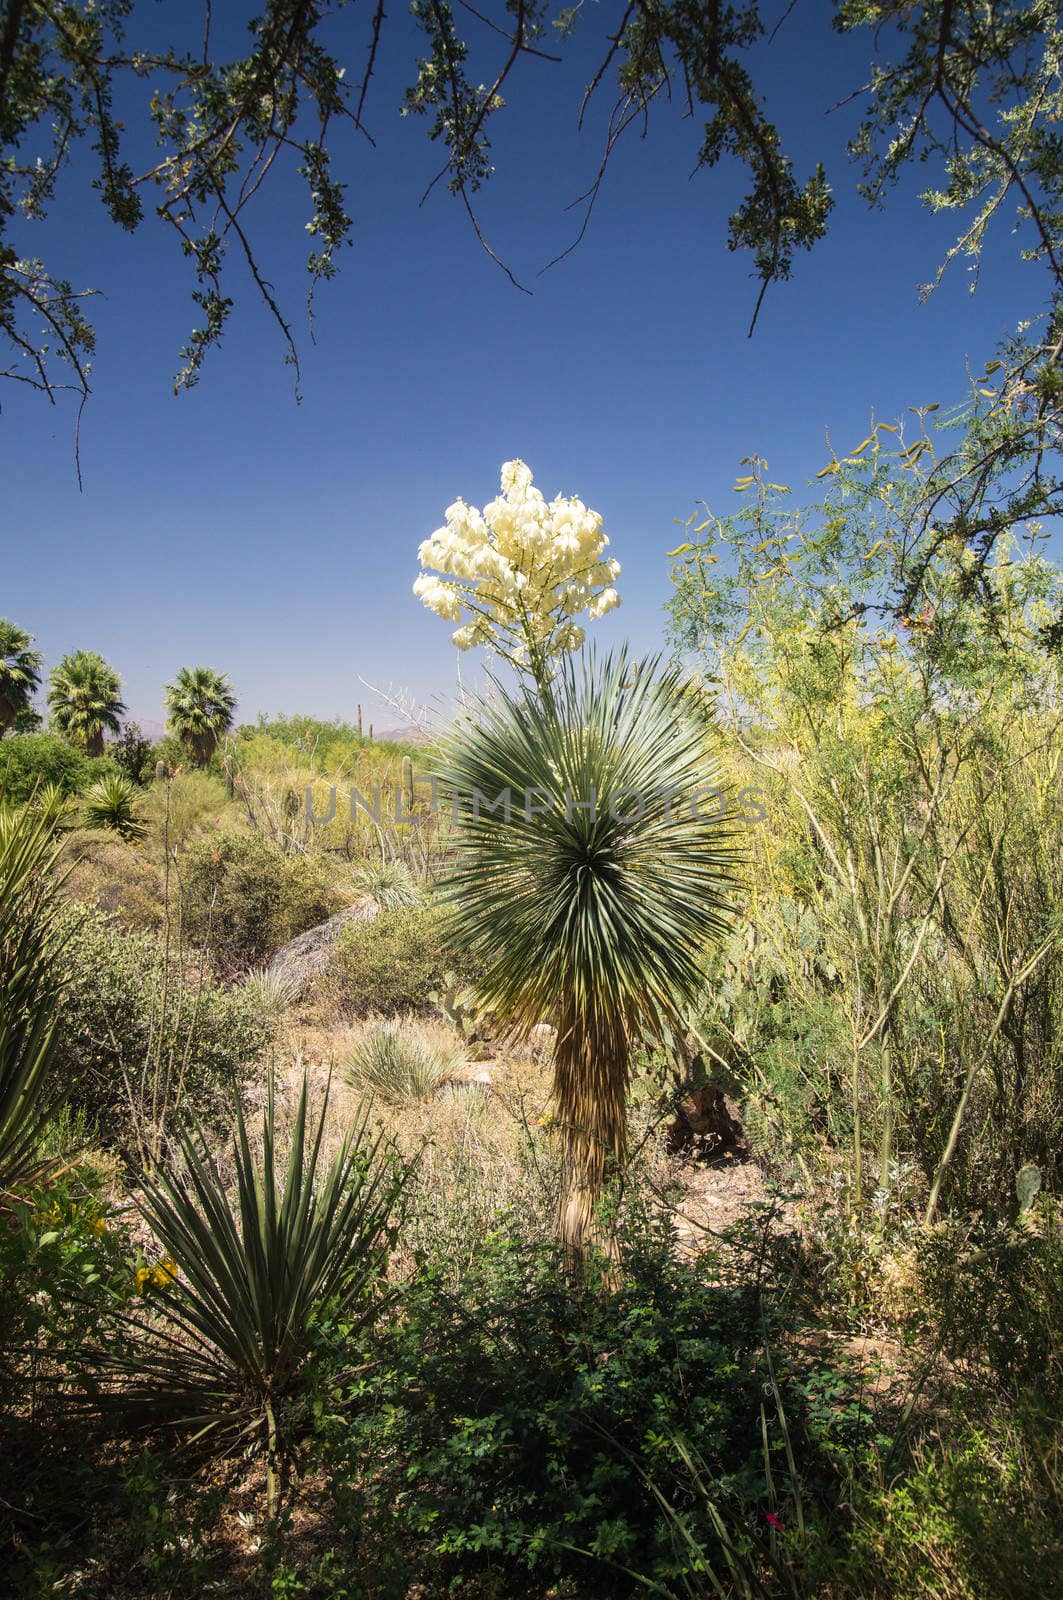 Flowering Yucca in Arizona desert